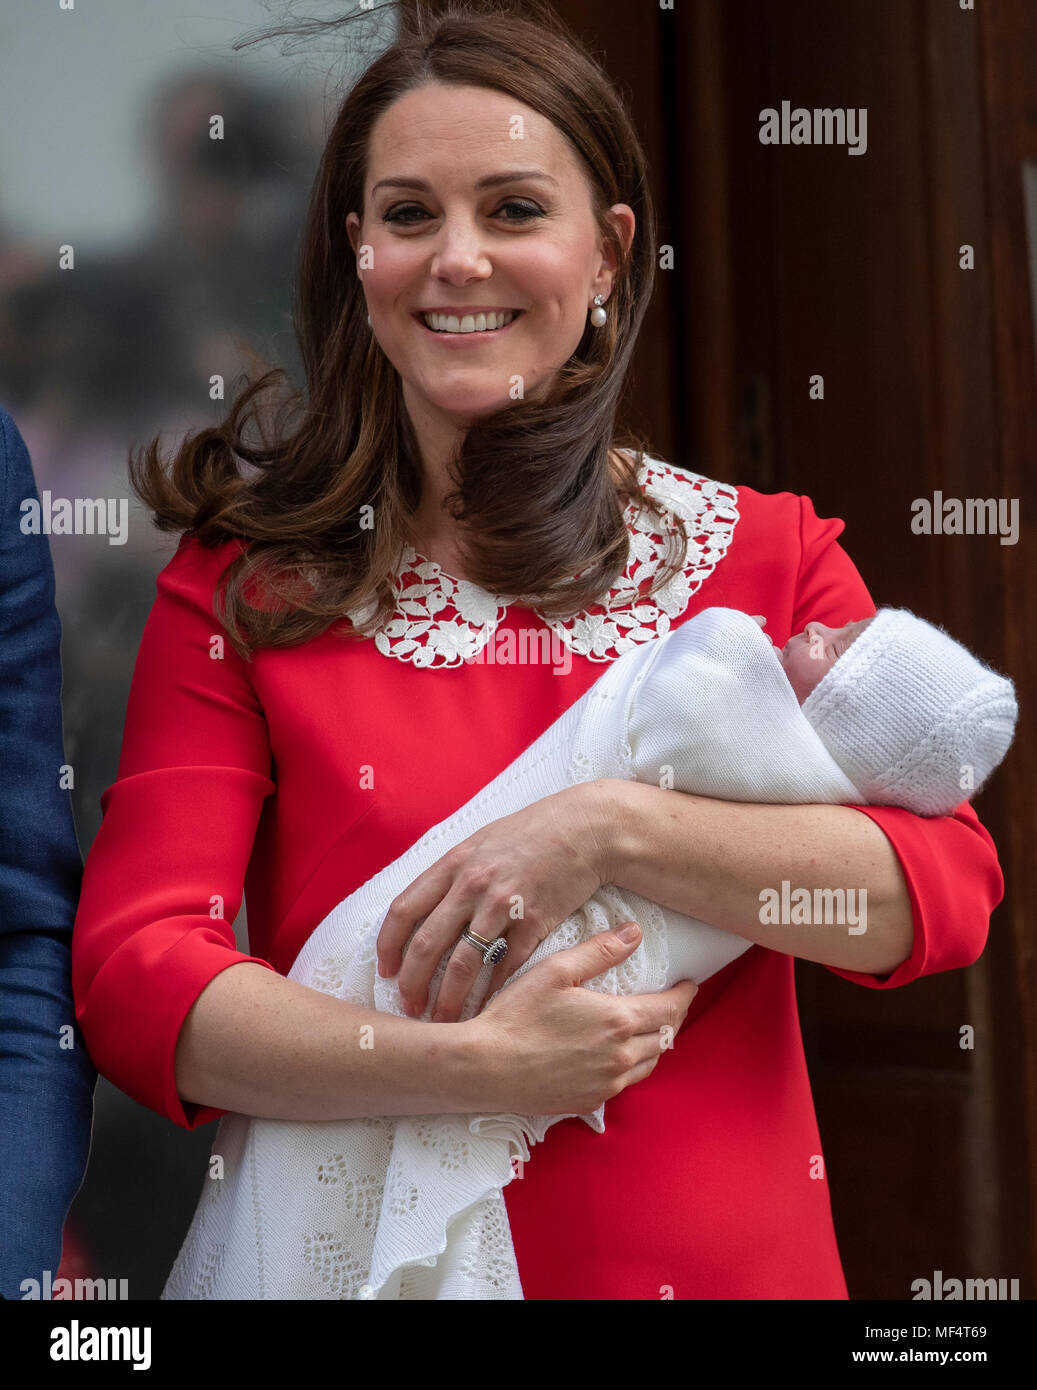 23 aprile 2018 Londra Regno Unito il principe William e Catherine, duchessa di Cambridge lasciare l'ospedale St Mary's Linda ala con il loro neonato come ancora senza nome, figlio. Foto Stock